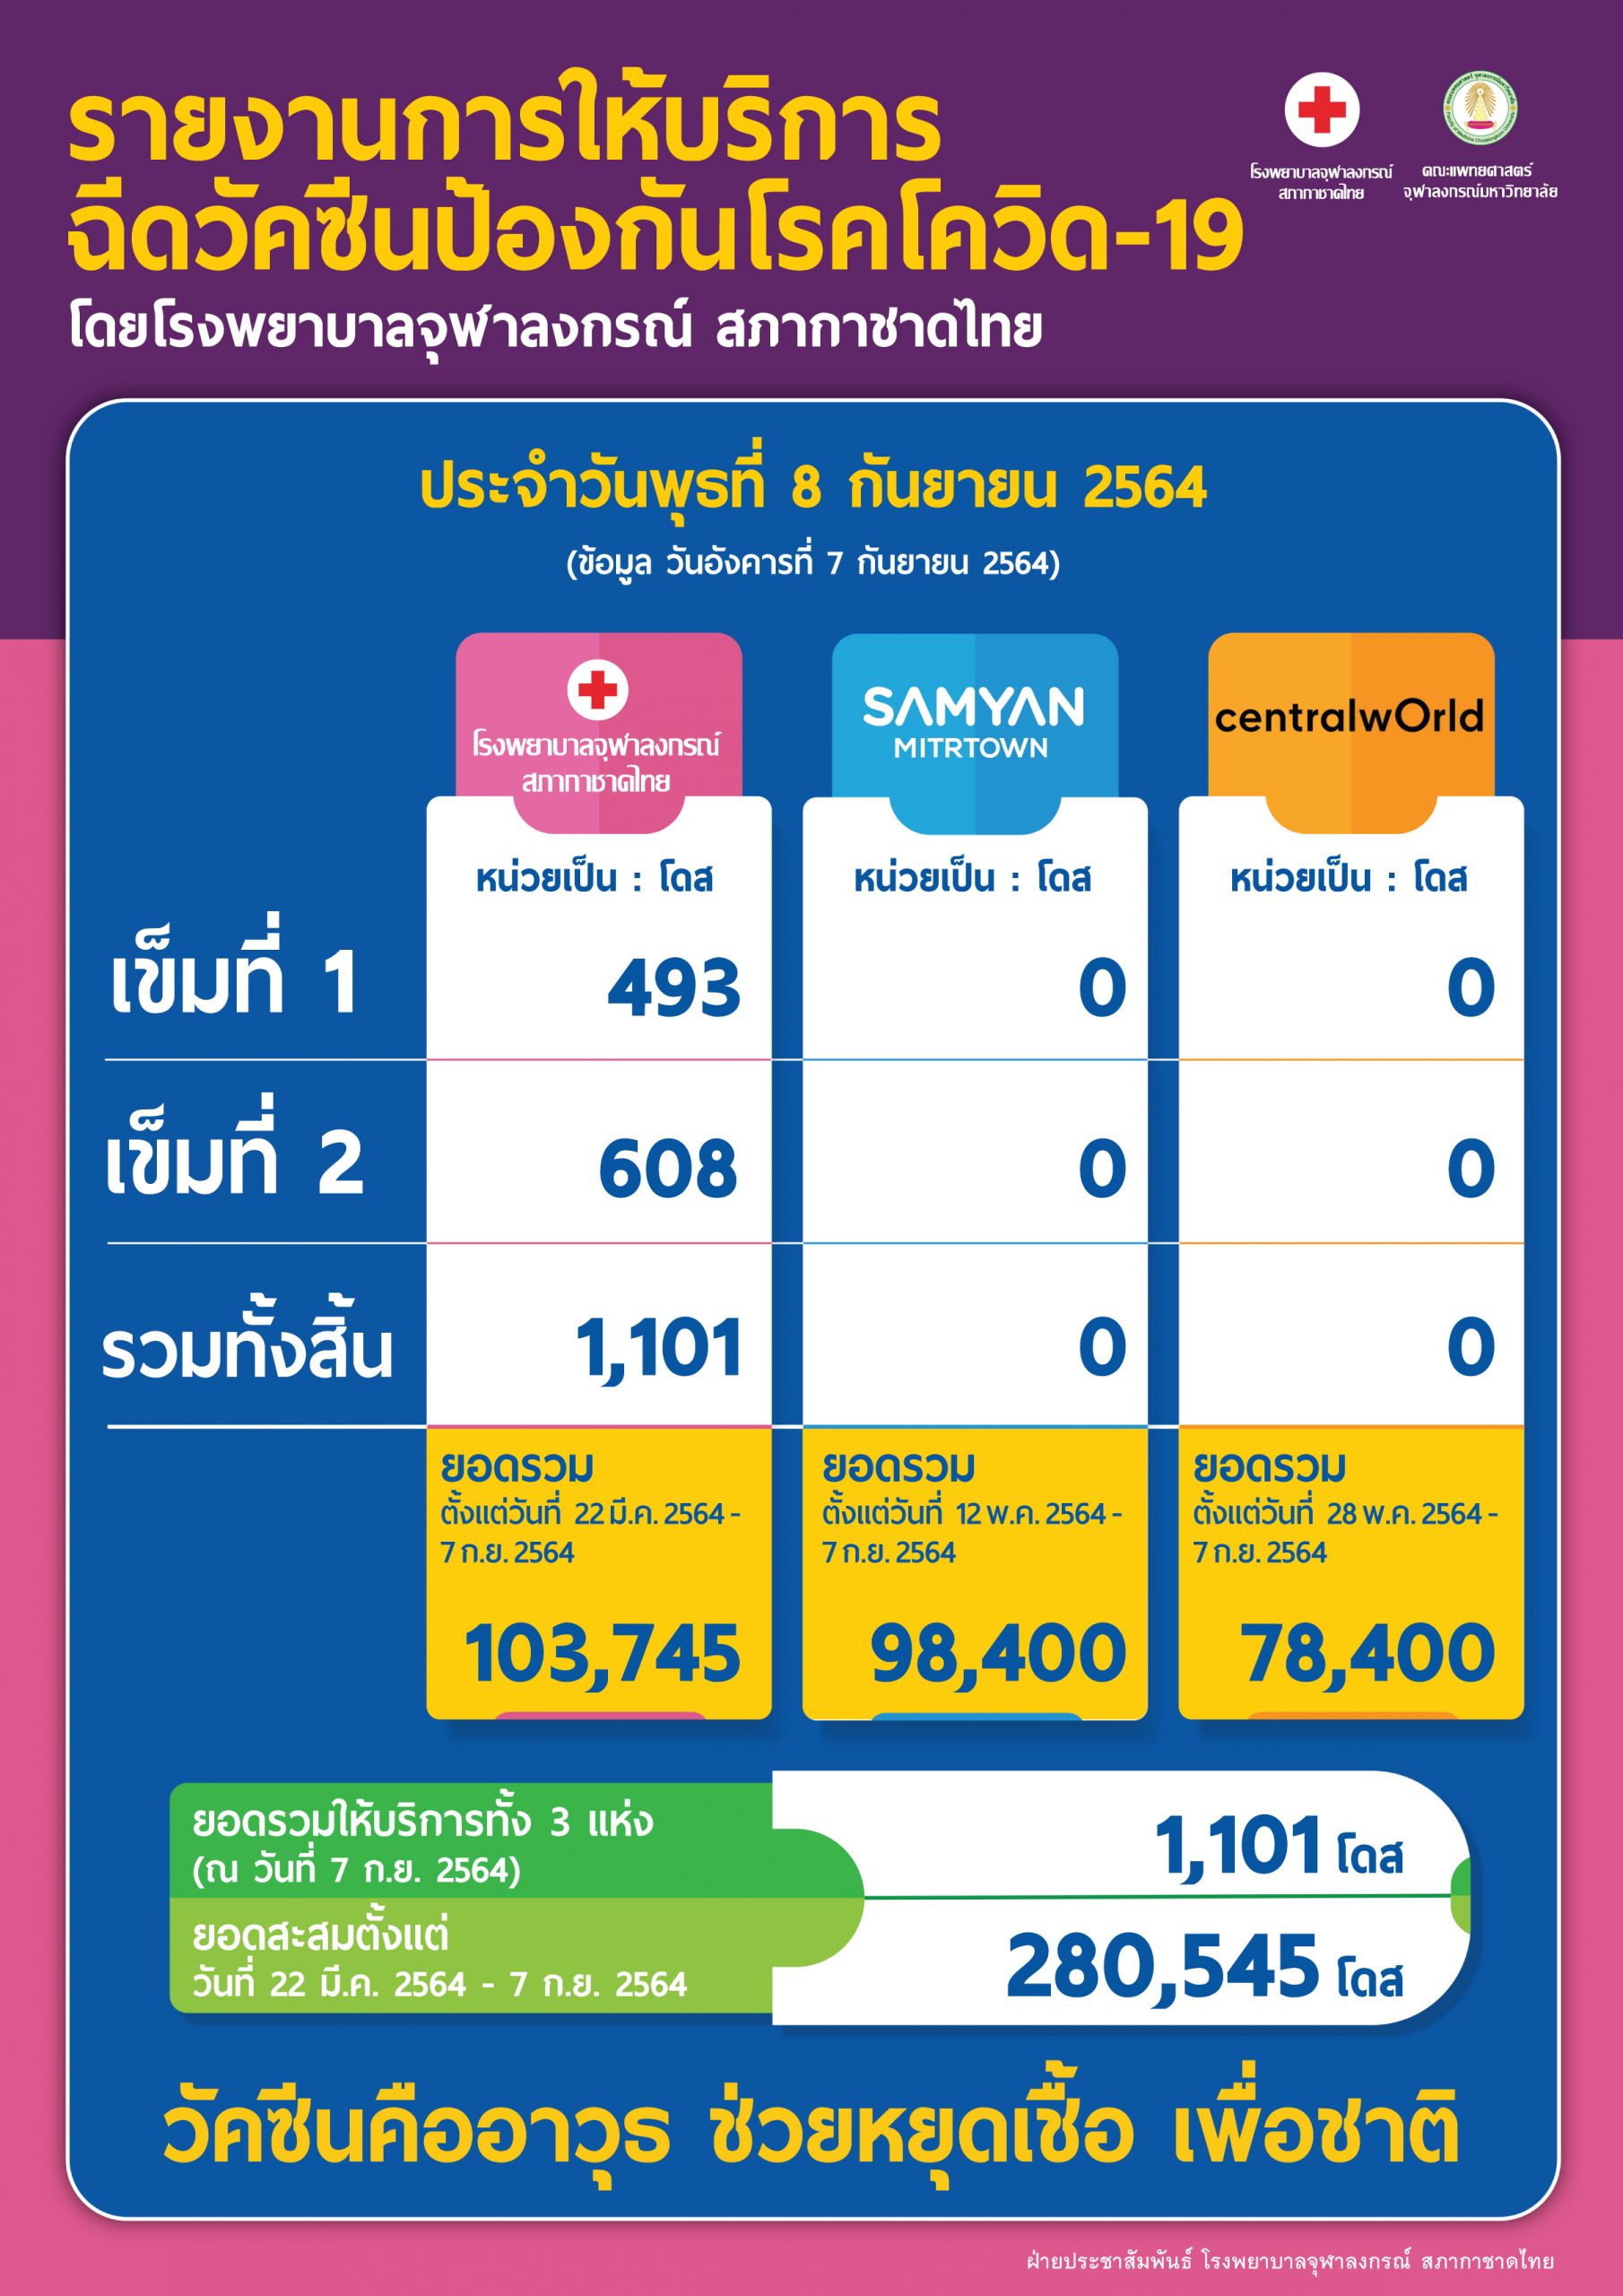 รายงานการให้บริการฉีดวัคซีนป้องกันโรคโควิด-19 โดยโรงพยาบาลจุฬาลงกรณ์ สภากาชาดไทย ประจำวันพุธที่ 8 กันยายน 2564